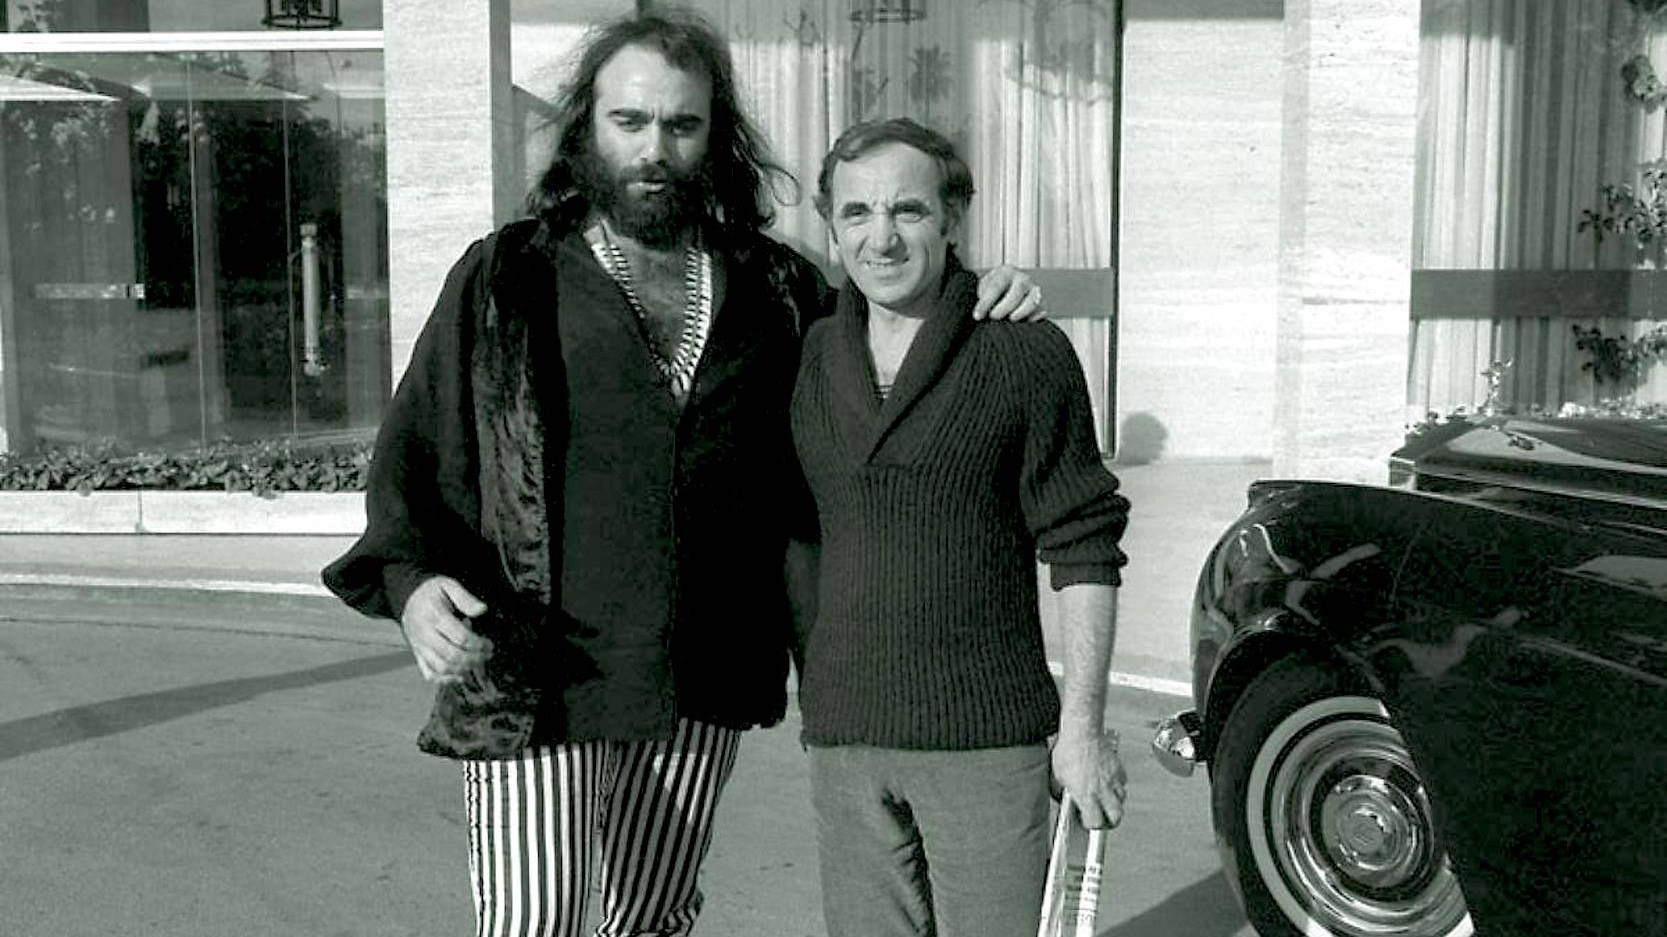 Ιστορική φωτογραφία: Ο Ντέμης Ρούσσος μαζί με τον Charles Aznavour